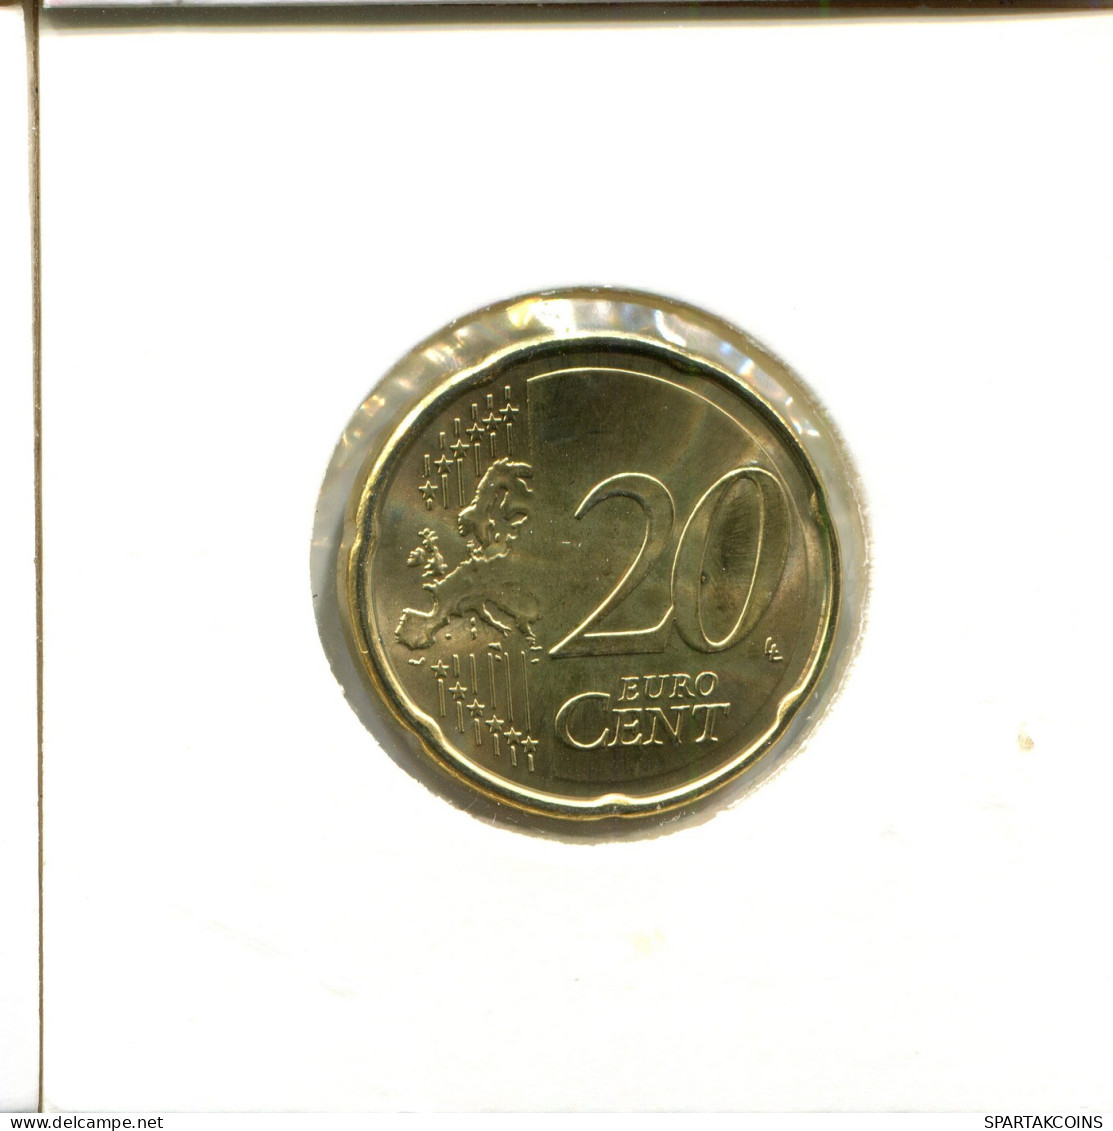 20 EURO CENTS 2011 ESTONIA Coin #EU069.U - Estonie